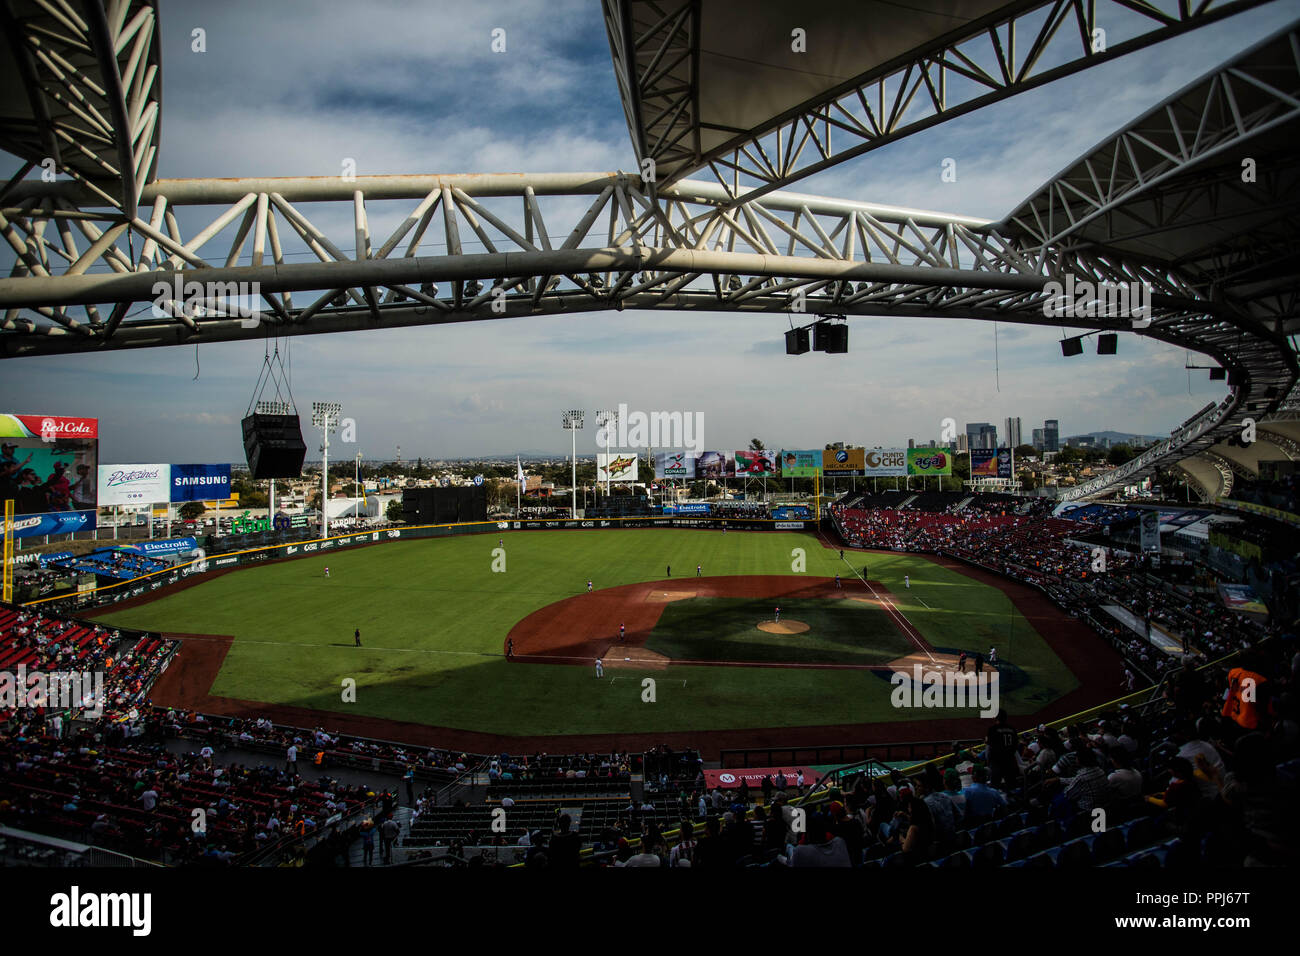 Estadio de Beisbol Charros de Jalisco - All You Need to Know BEFORE You Go  (with Photos)